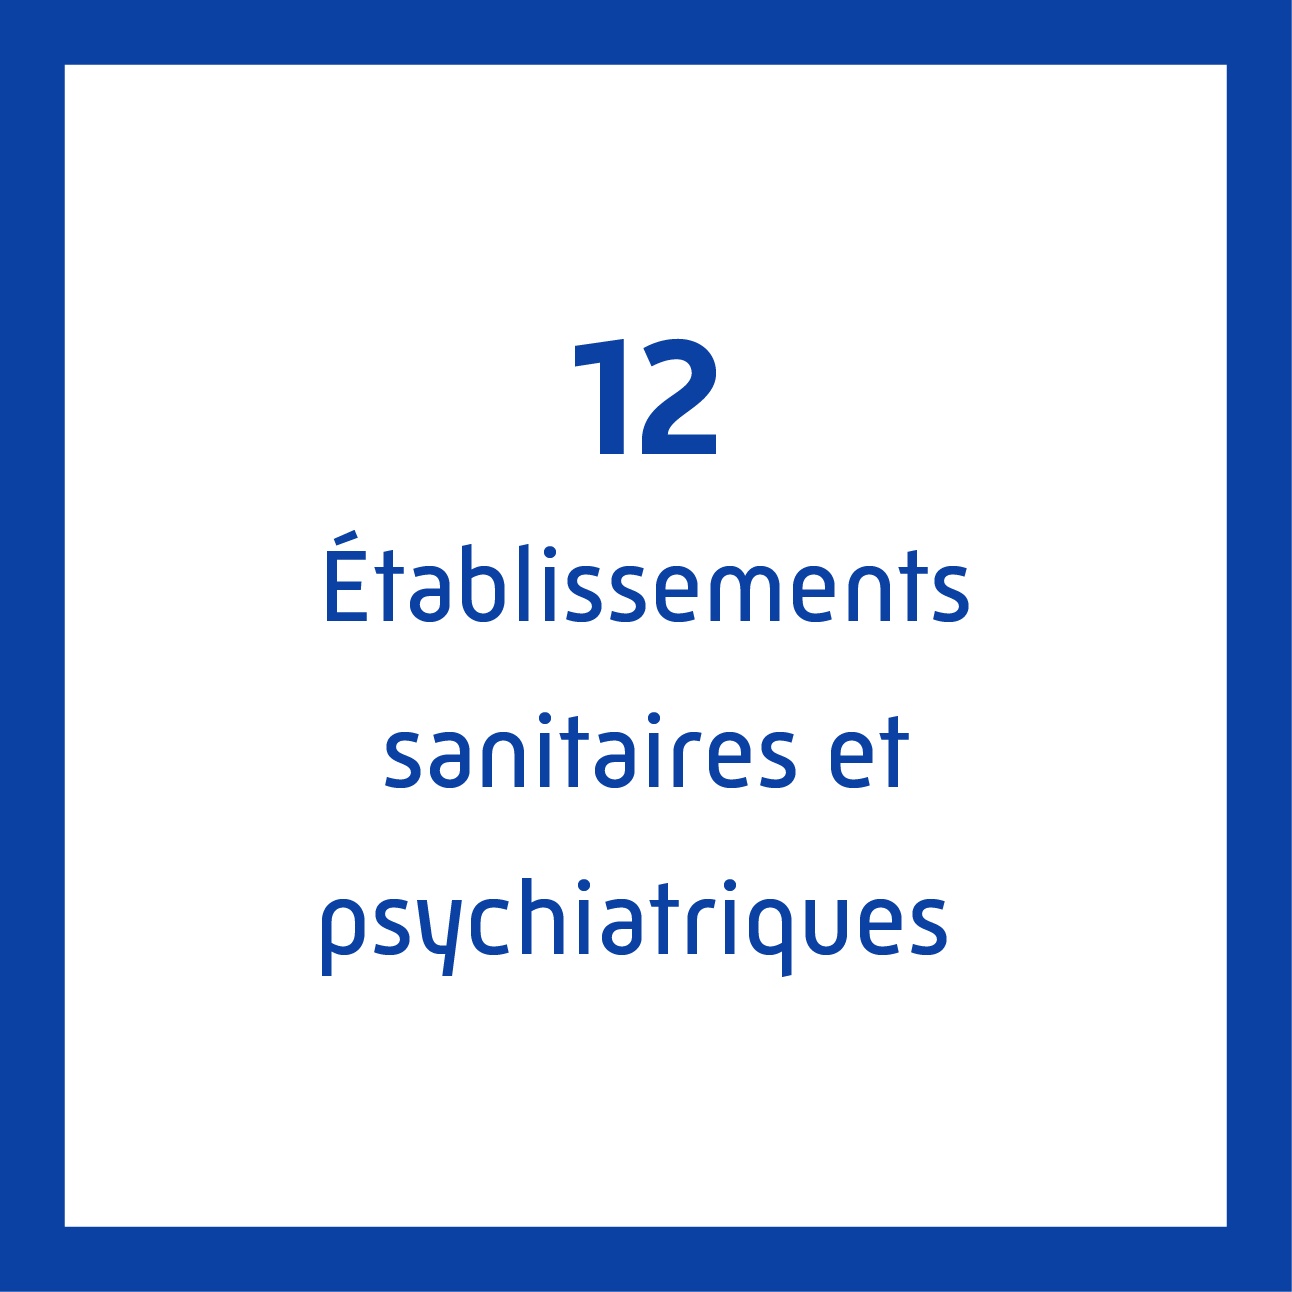 12 établissements sanitaires et psychiatriques